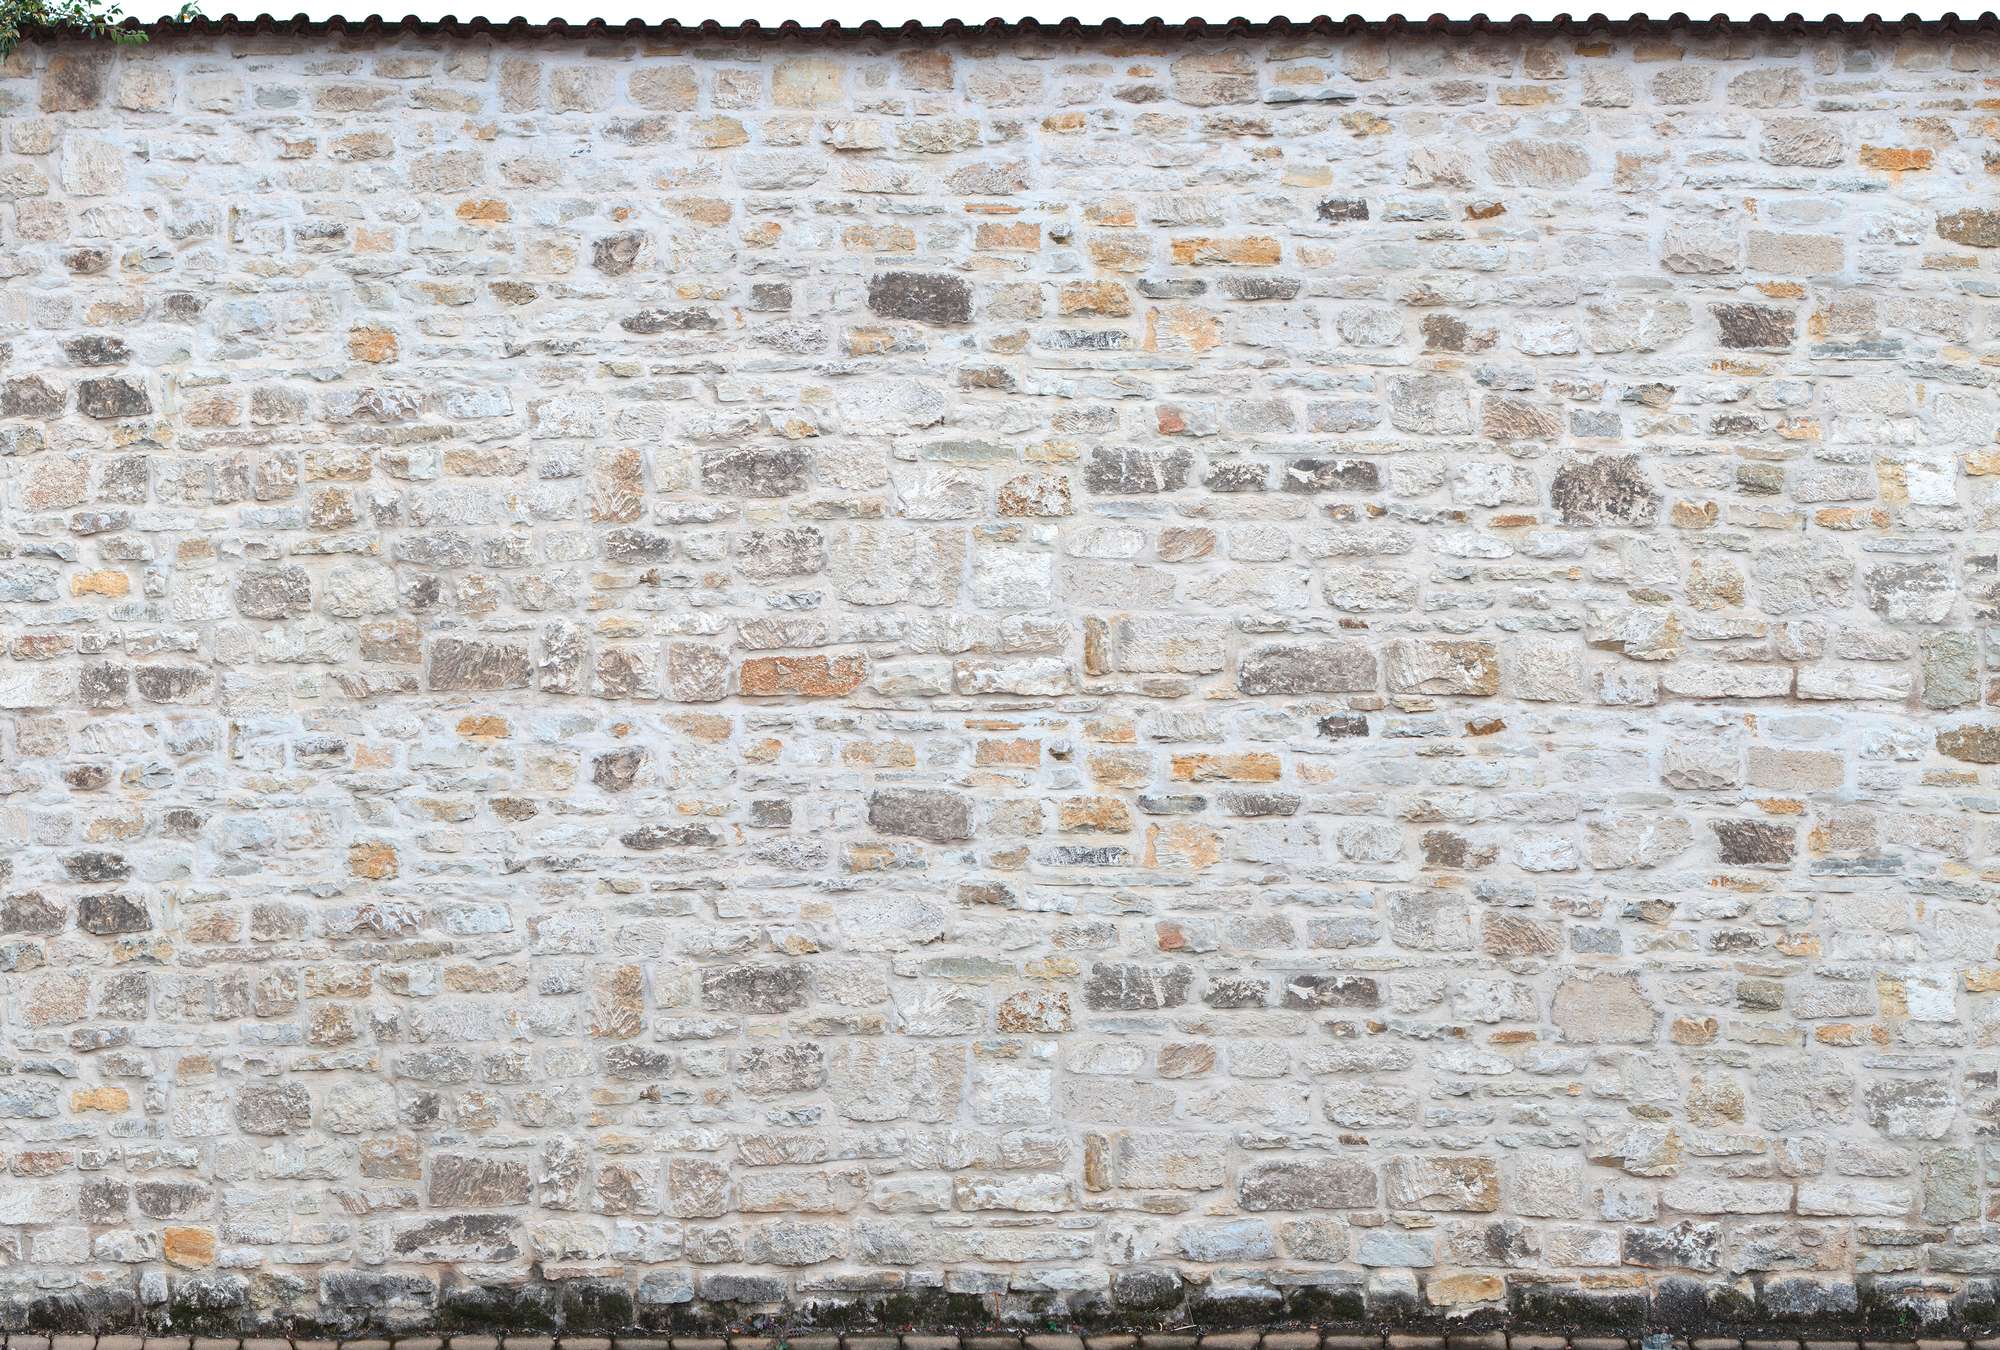             Mural de estilo rústico - Pared de piedra natural
        